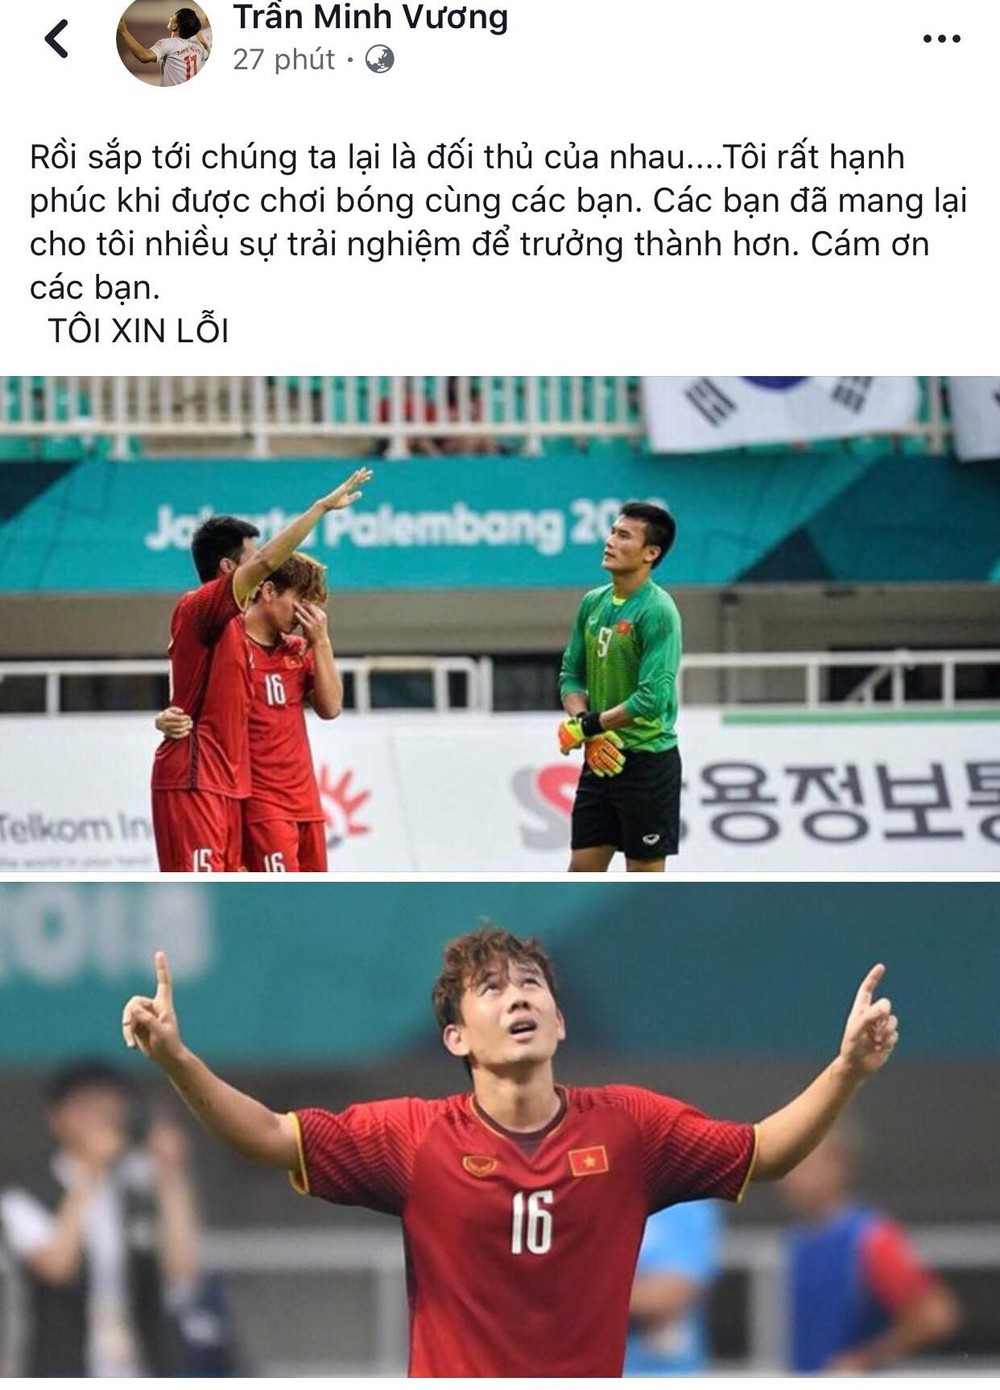 Công Phượng, Văn Toàn cùng nhiều cầu thủ nói lời tạm biệt U23 Việt Nam sau thất bại trước UAE - Ảnh 8.